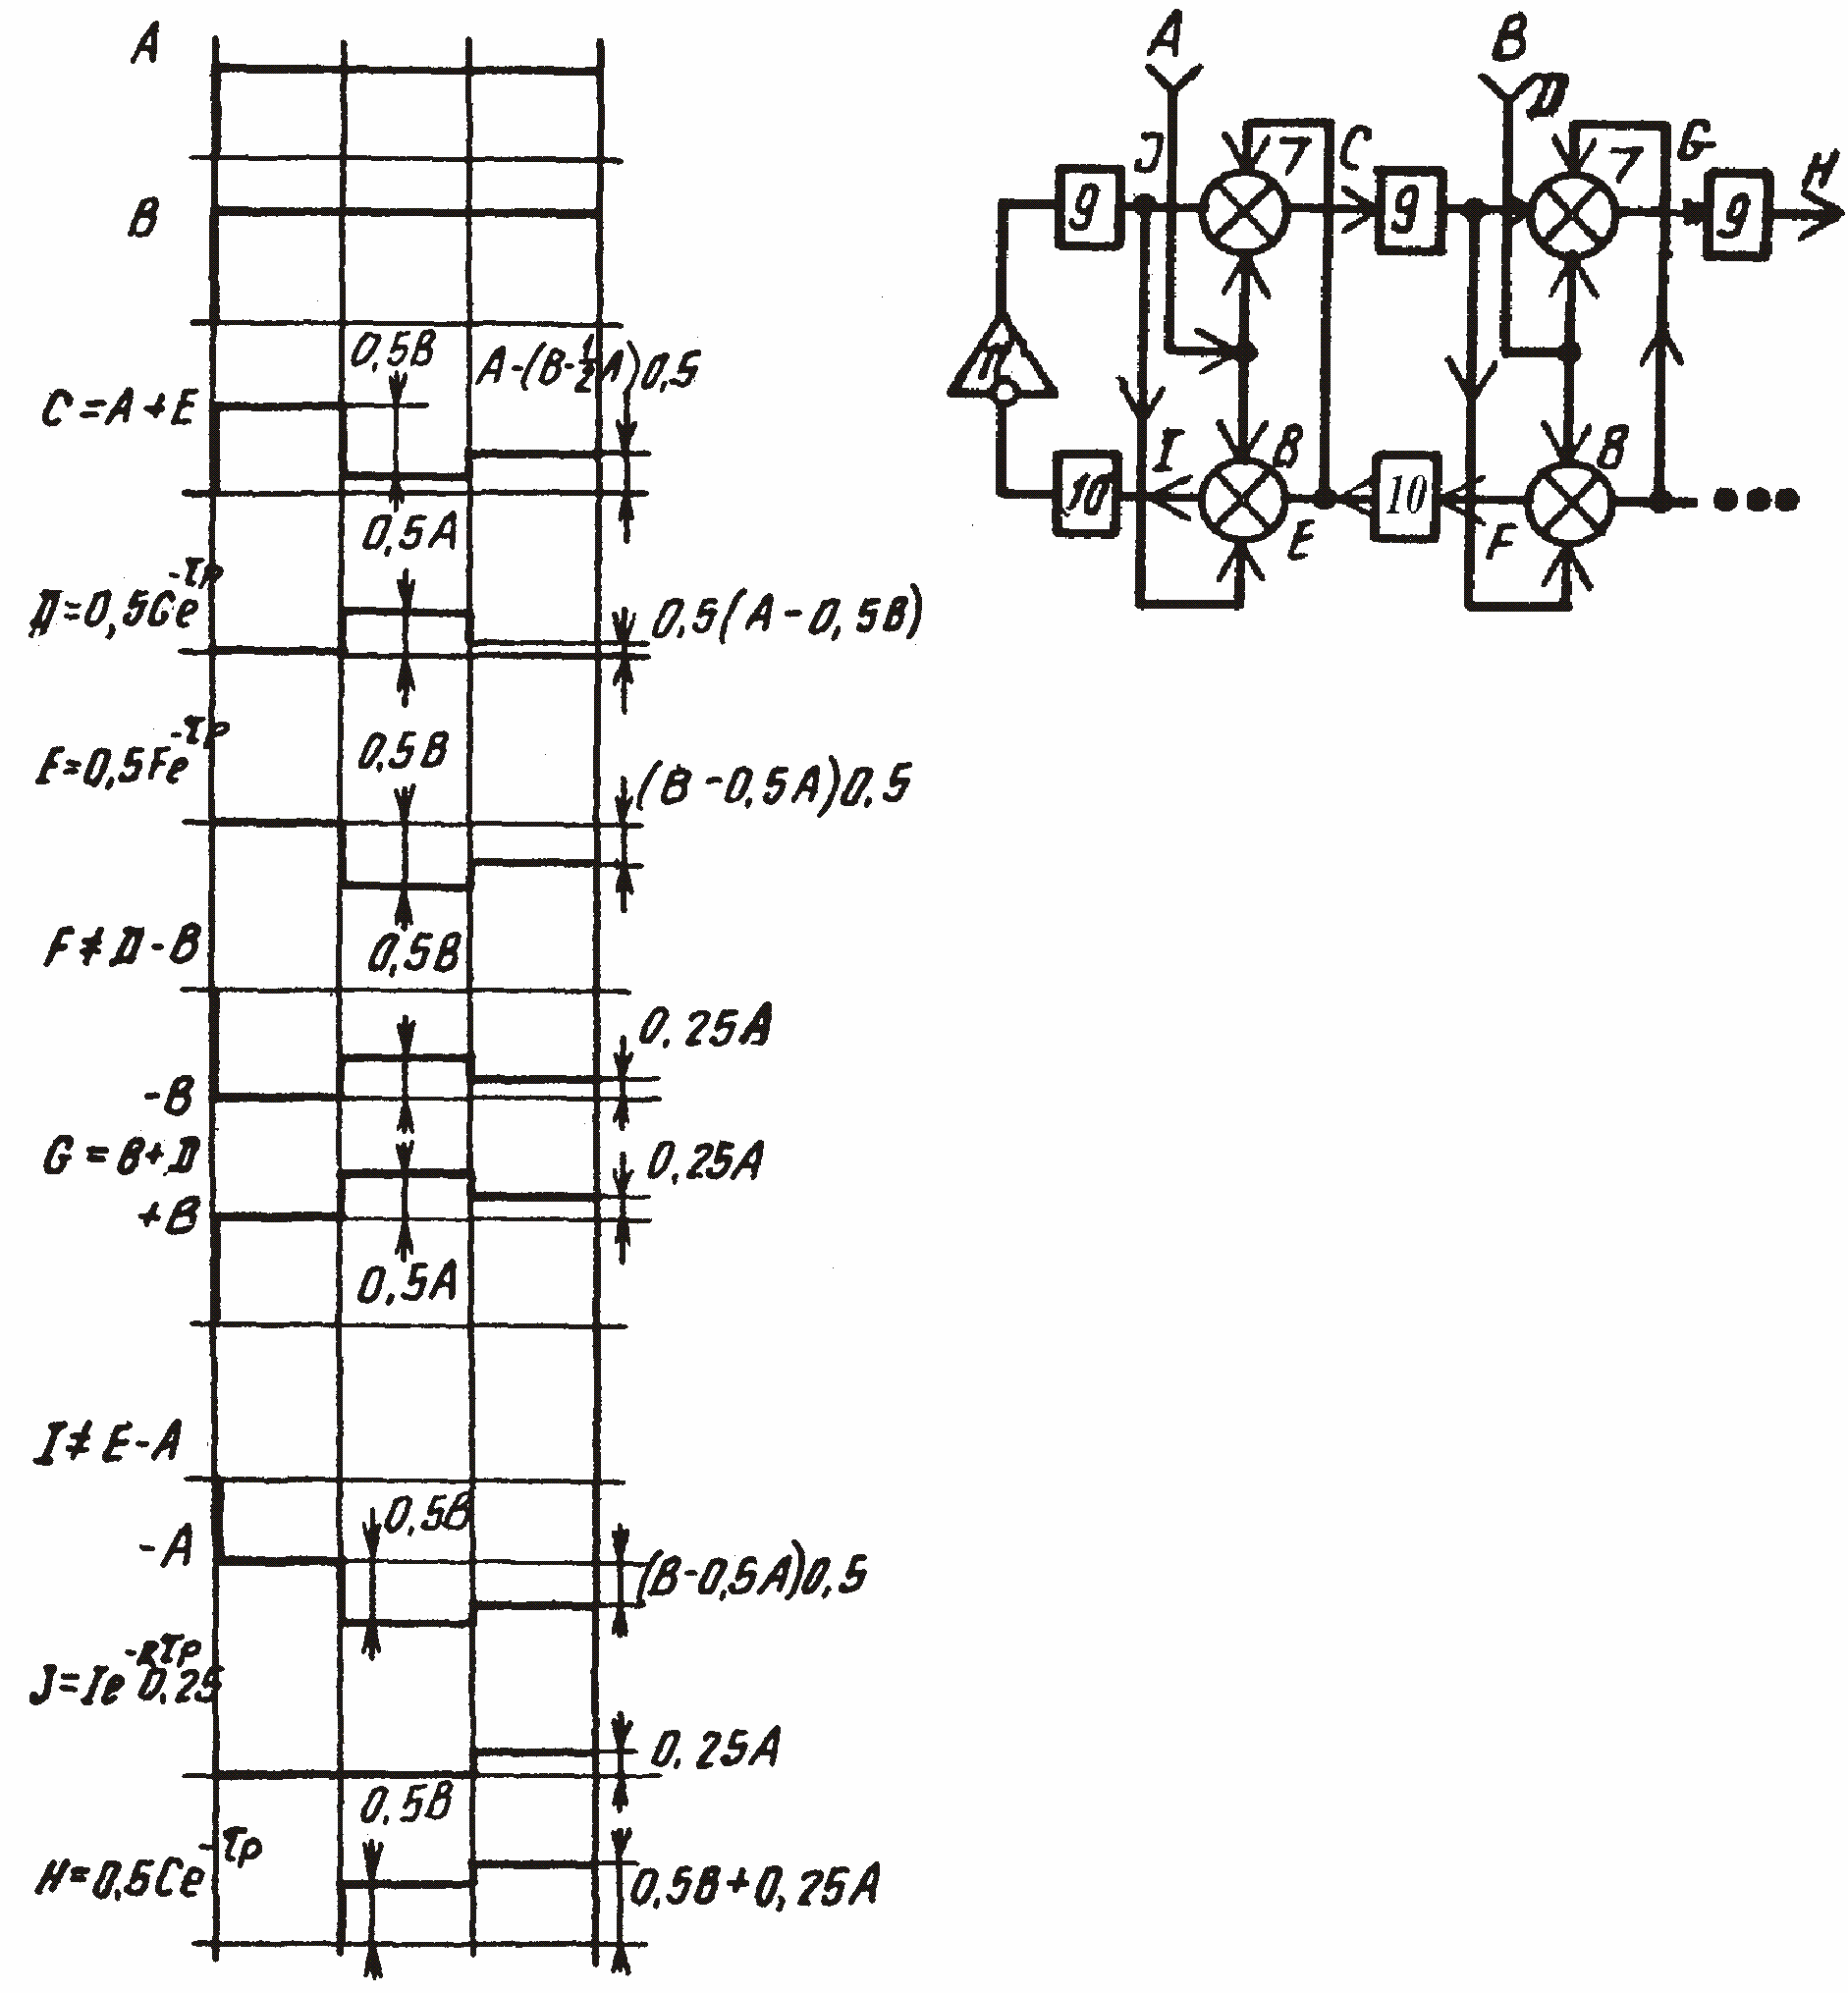  Рис. 6. Диаграмма сигналов двухагентной модели волнового нейропроцессора по а.с. 1501101. В данном случае статические коэффициенты передачи элементов 9 и 10 задержки равны 0,5.